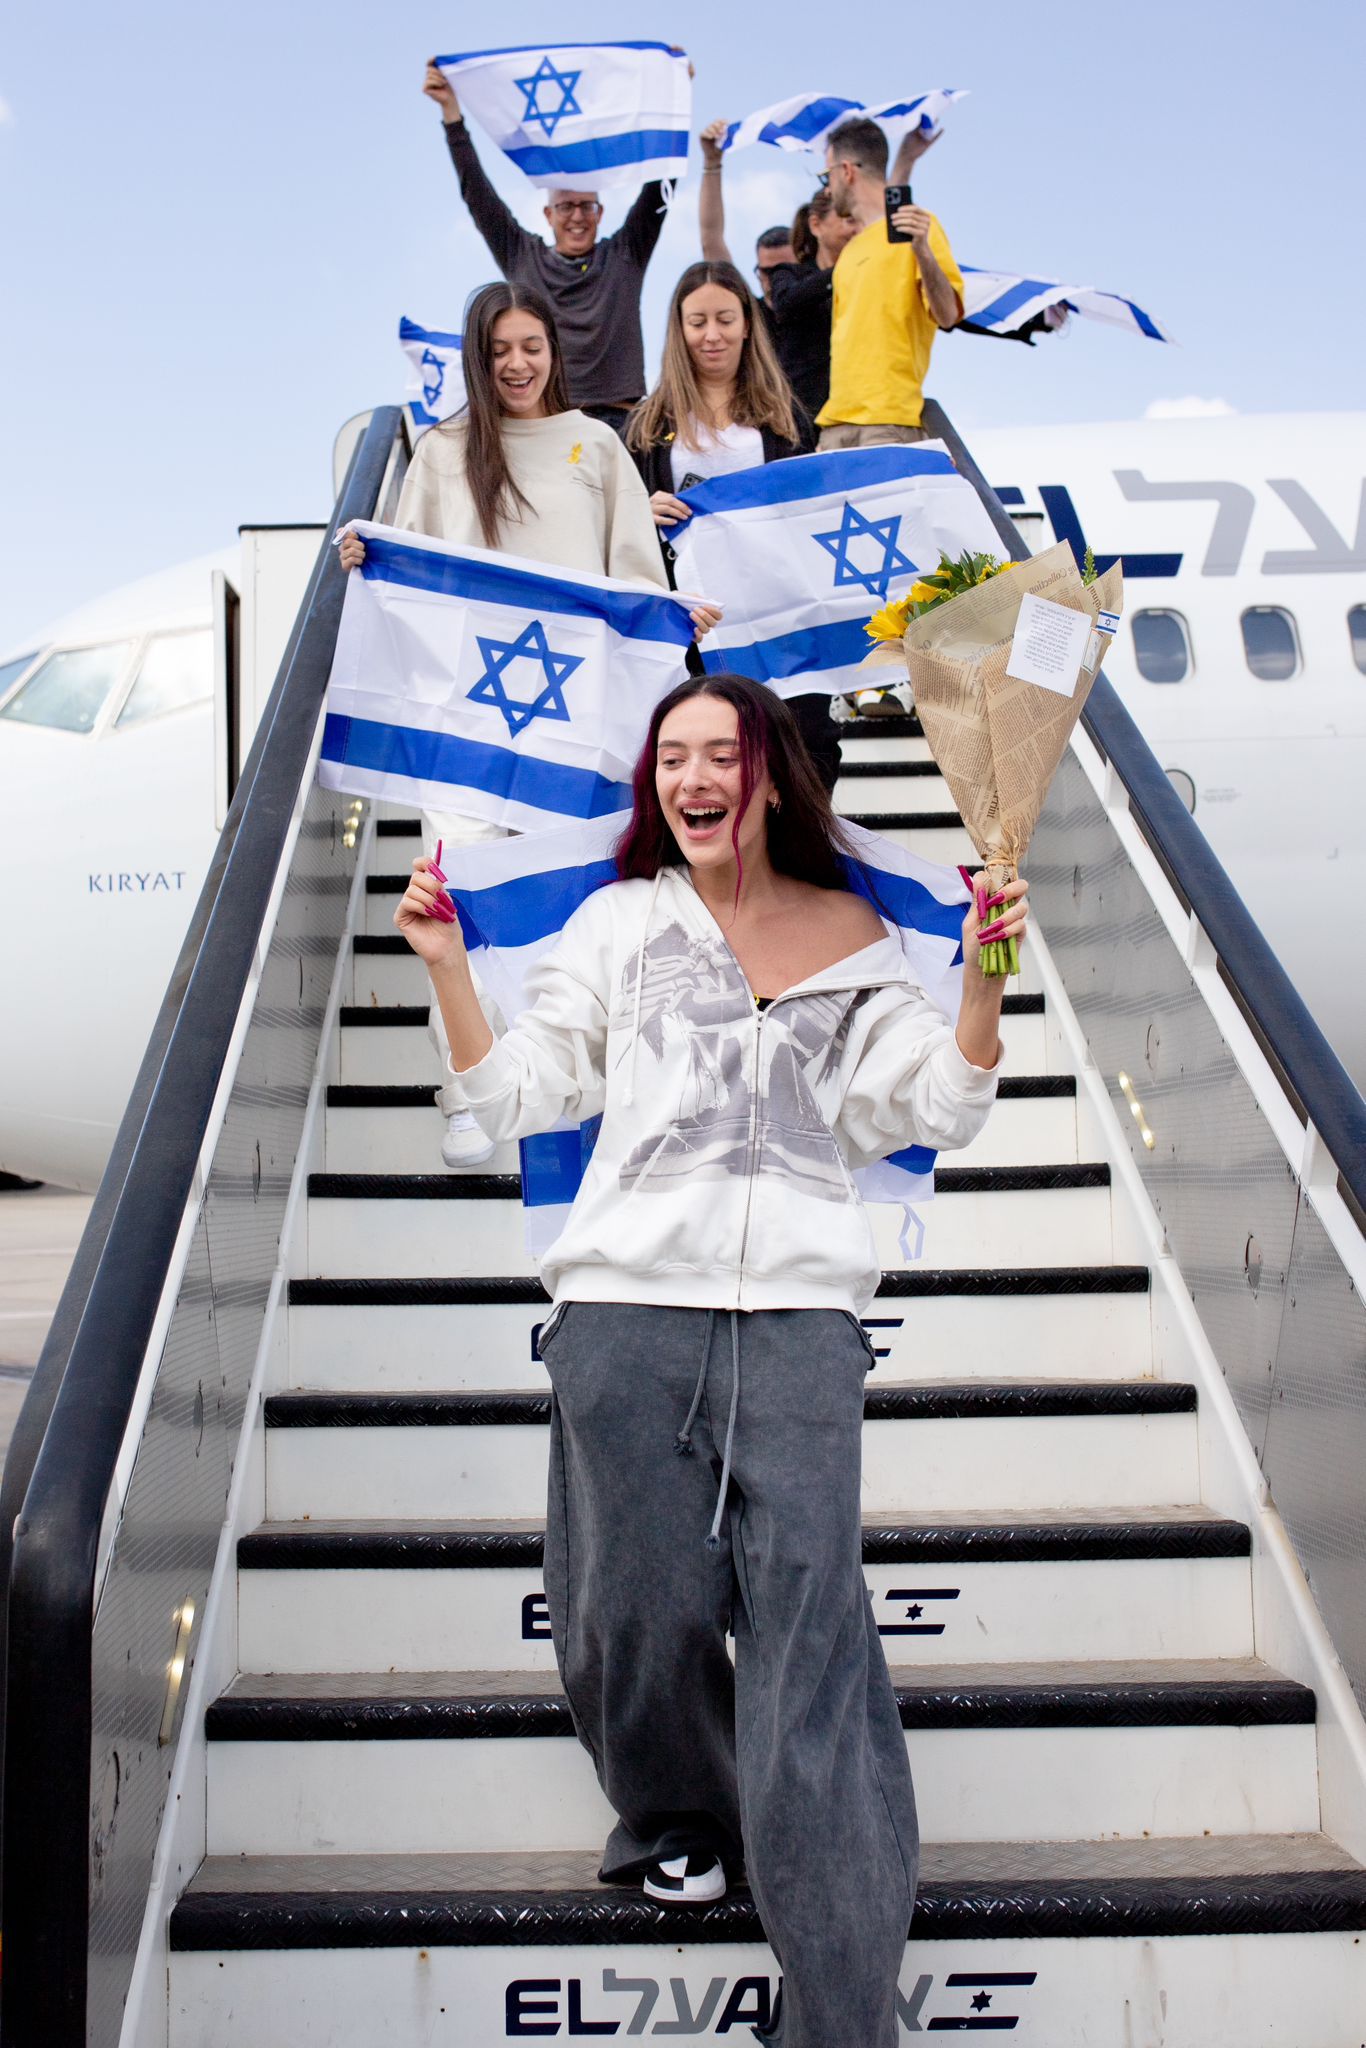 طائرة تابعة ال عال من مالمو تهبط في إسرائيل وعلى متنها عيدن جولان والوفد الإسرائيلي المشارك في يوروفيجن حيث تم إستقبالهم بالتصفيق وباقات الزهور